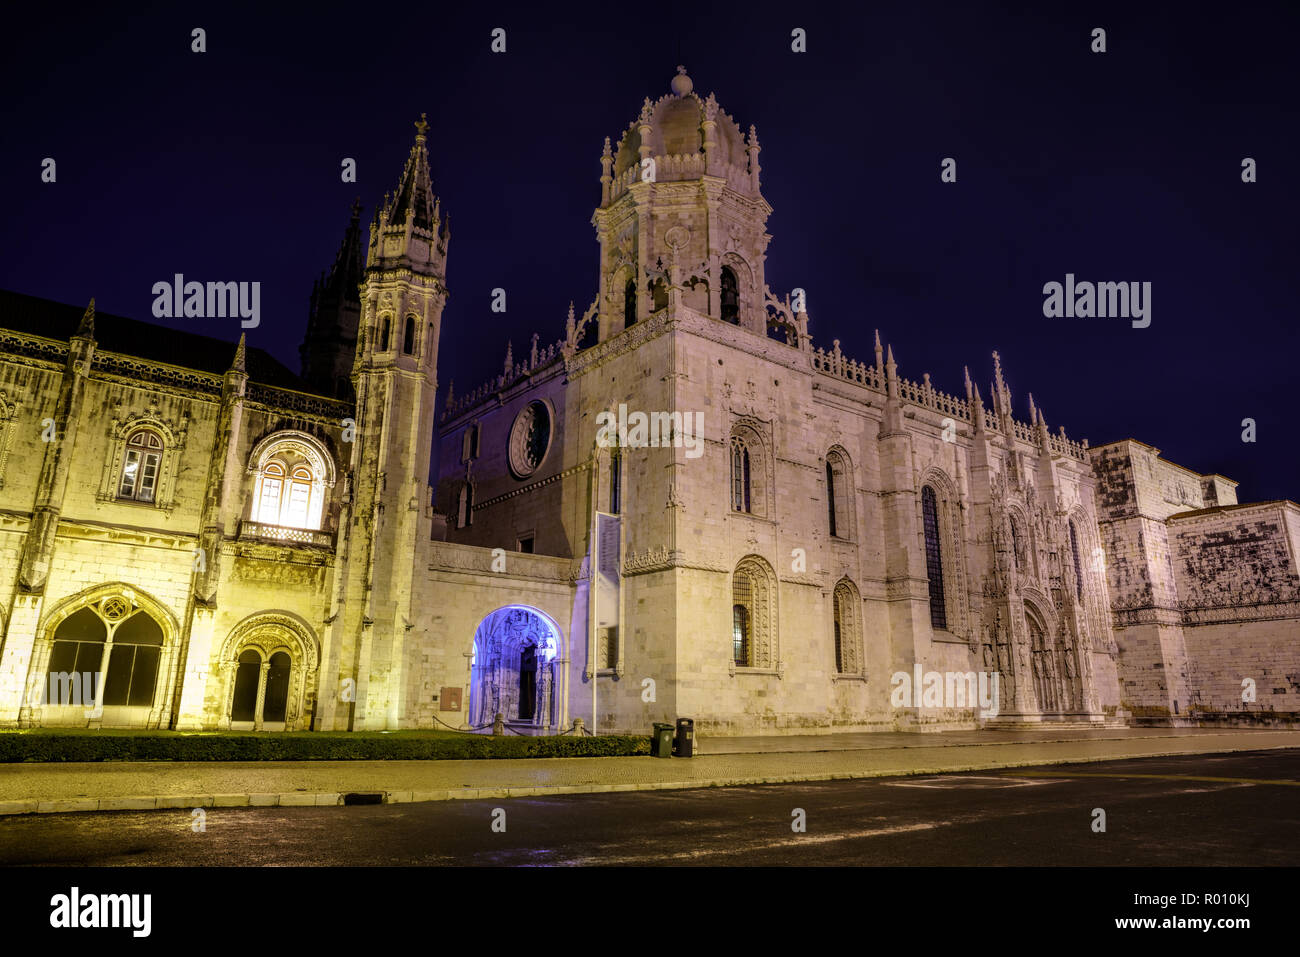 Fachada del Monasterio Jeronimos en el barrio de Belem de Lisboa, iluminada por la noche en el estilo manuelino Foto de stock